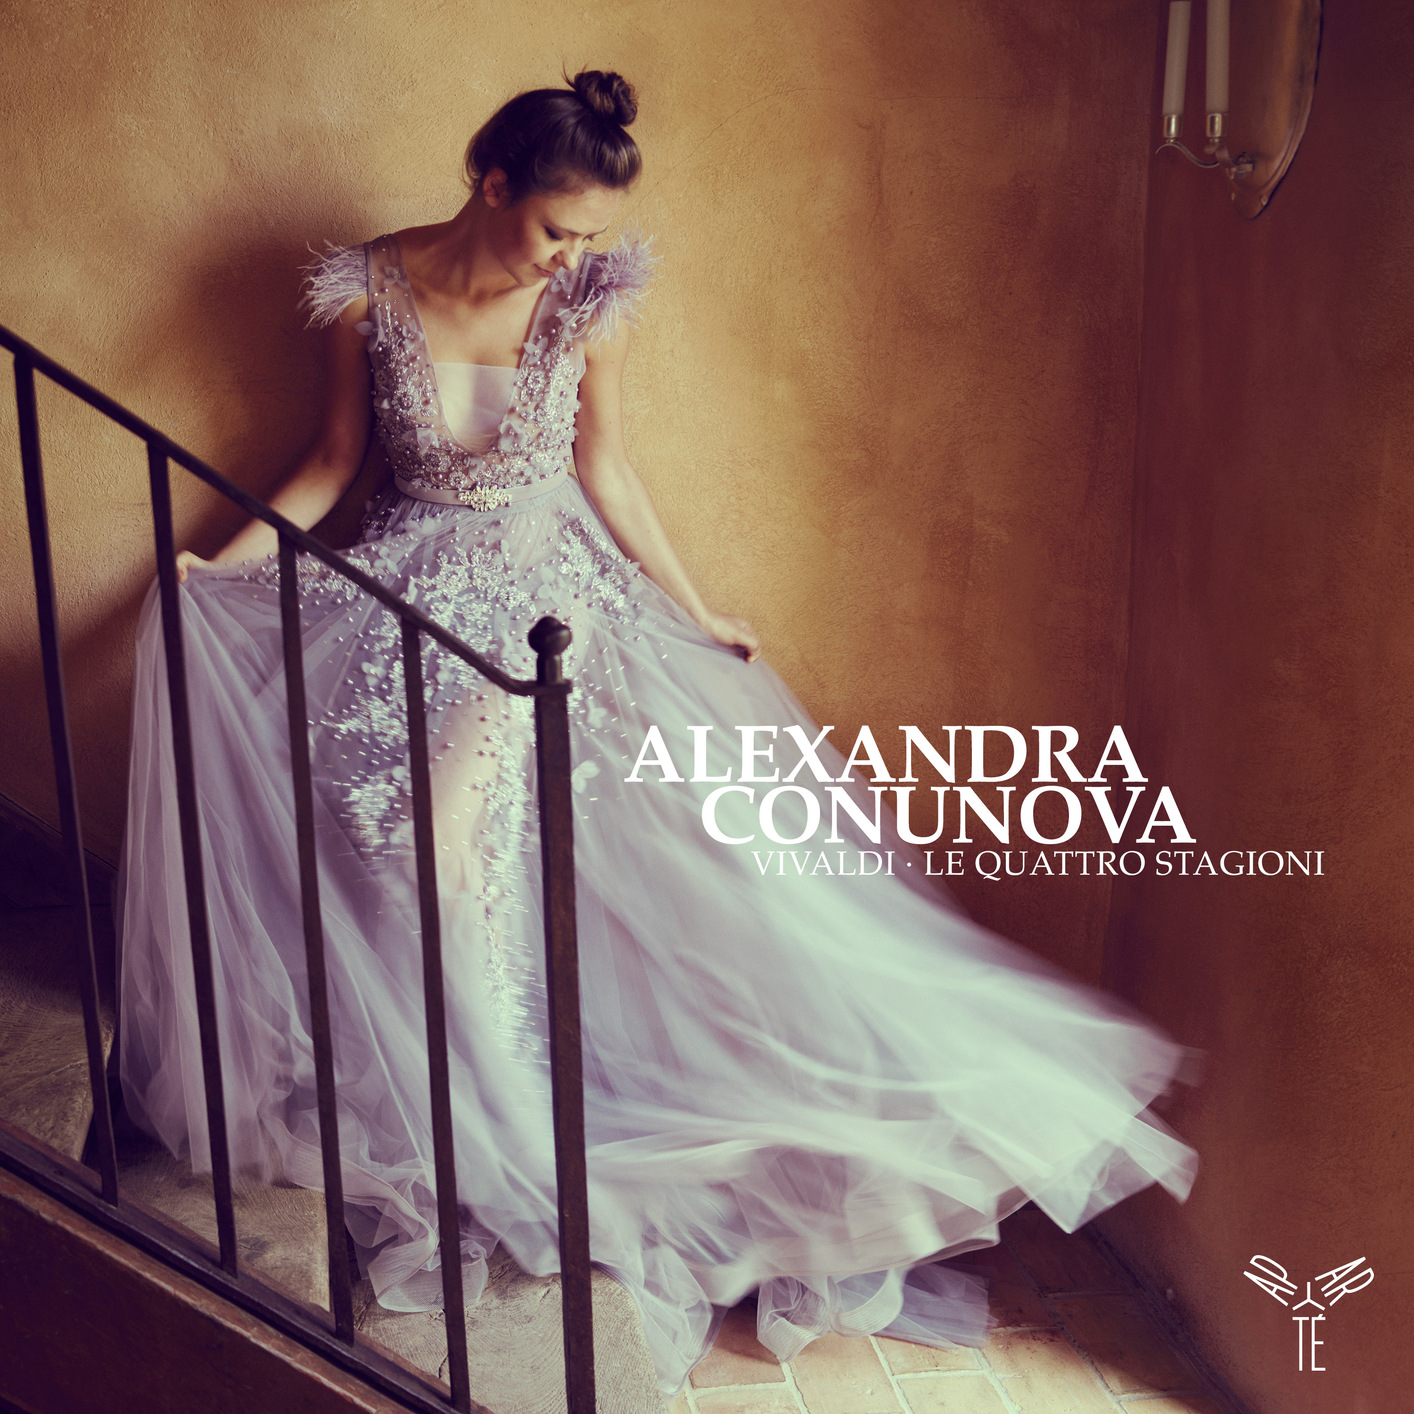 Alexandra Conunova - Vivaldi - Le Quattro Stagioni (2020) [FLAC 24bit/96kHz]